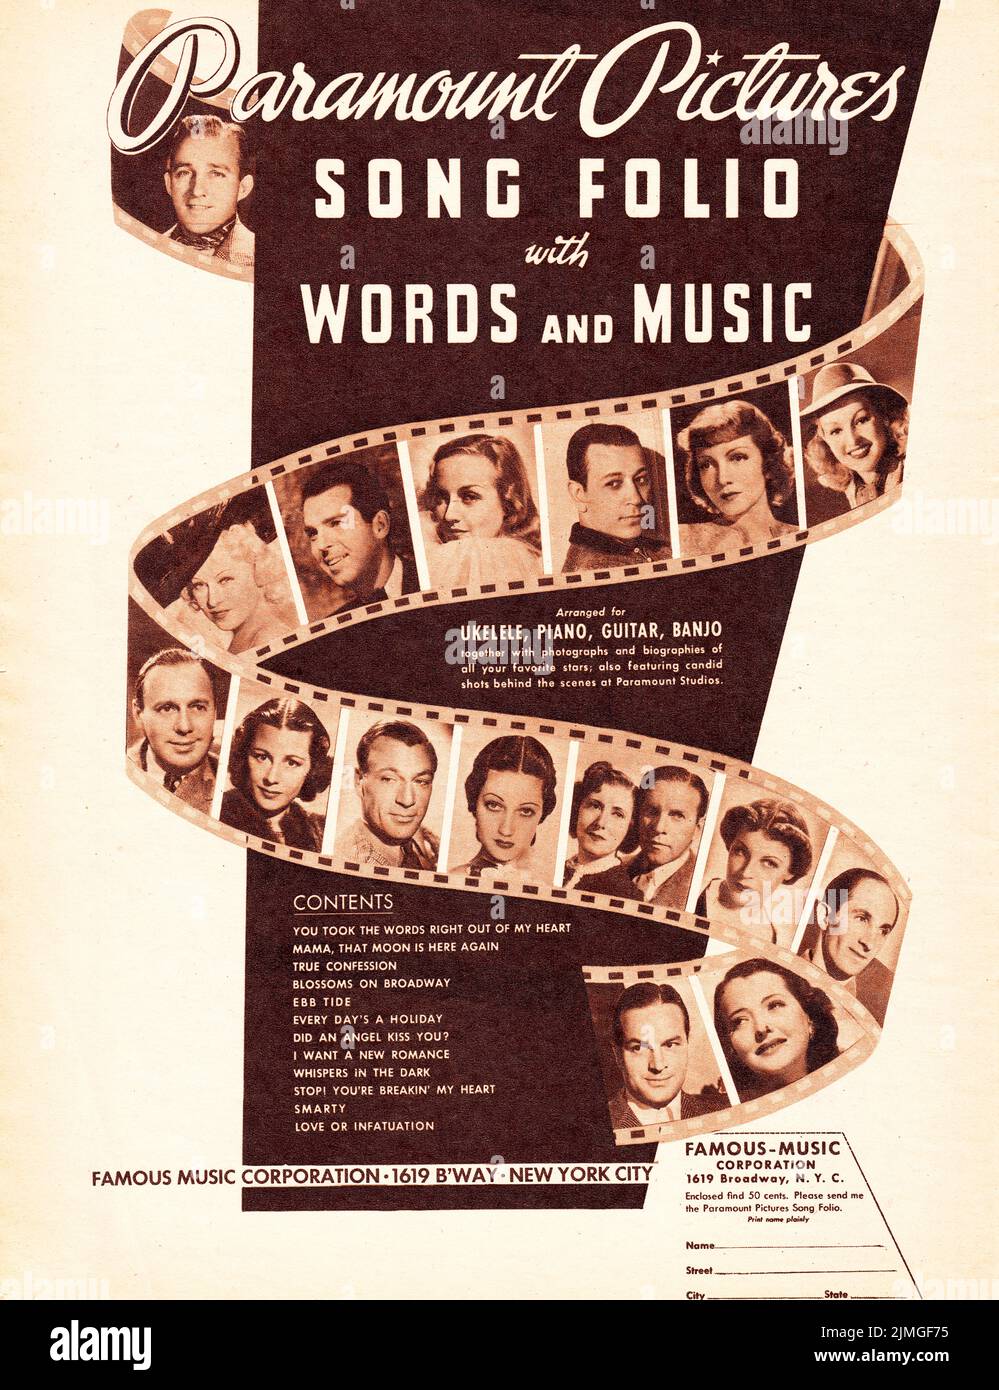 Eine sepiafarbene Anzeige eines Musikmagazins aus dem Jahr 1938 für die Noten von Paramount PicturesSong Folio mit Fotos berühmter Persönlichkeiten wie Bing Crosby, Jack Benny, Gary Cooper und anderen. Von der berühmten Music Corporation. Stockfoto